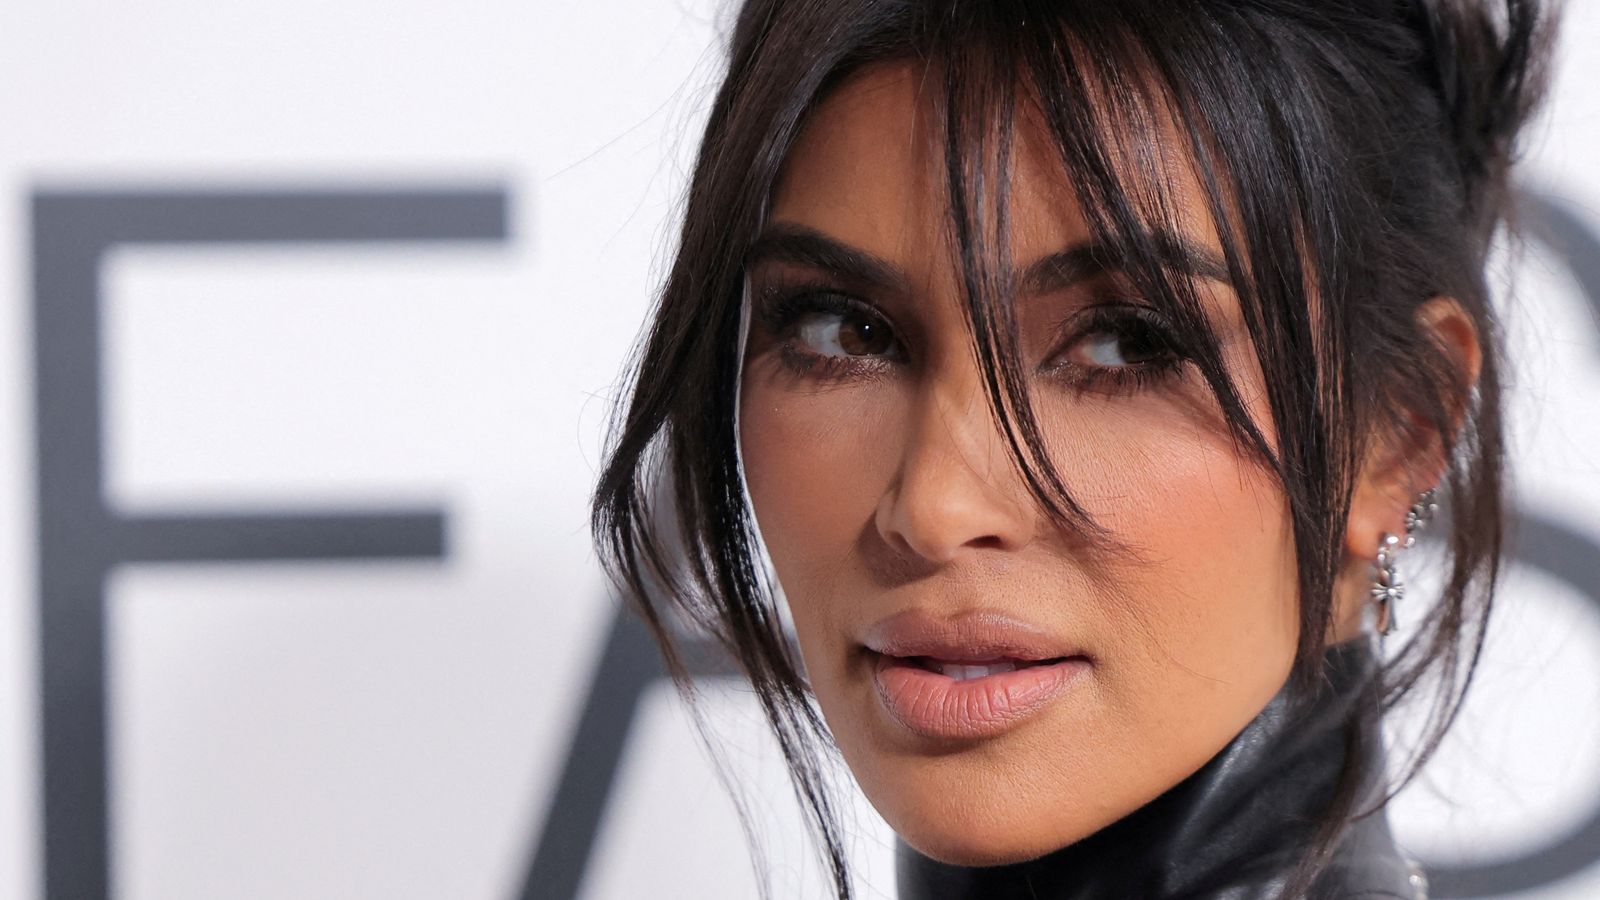 Kim Kardashian leaves tag on Balenciaga dress at Paris Fashion Show event